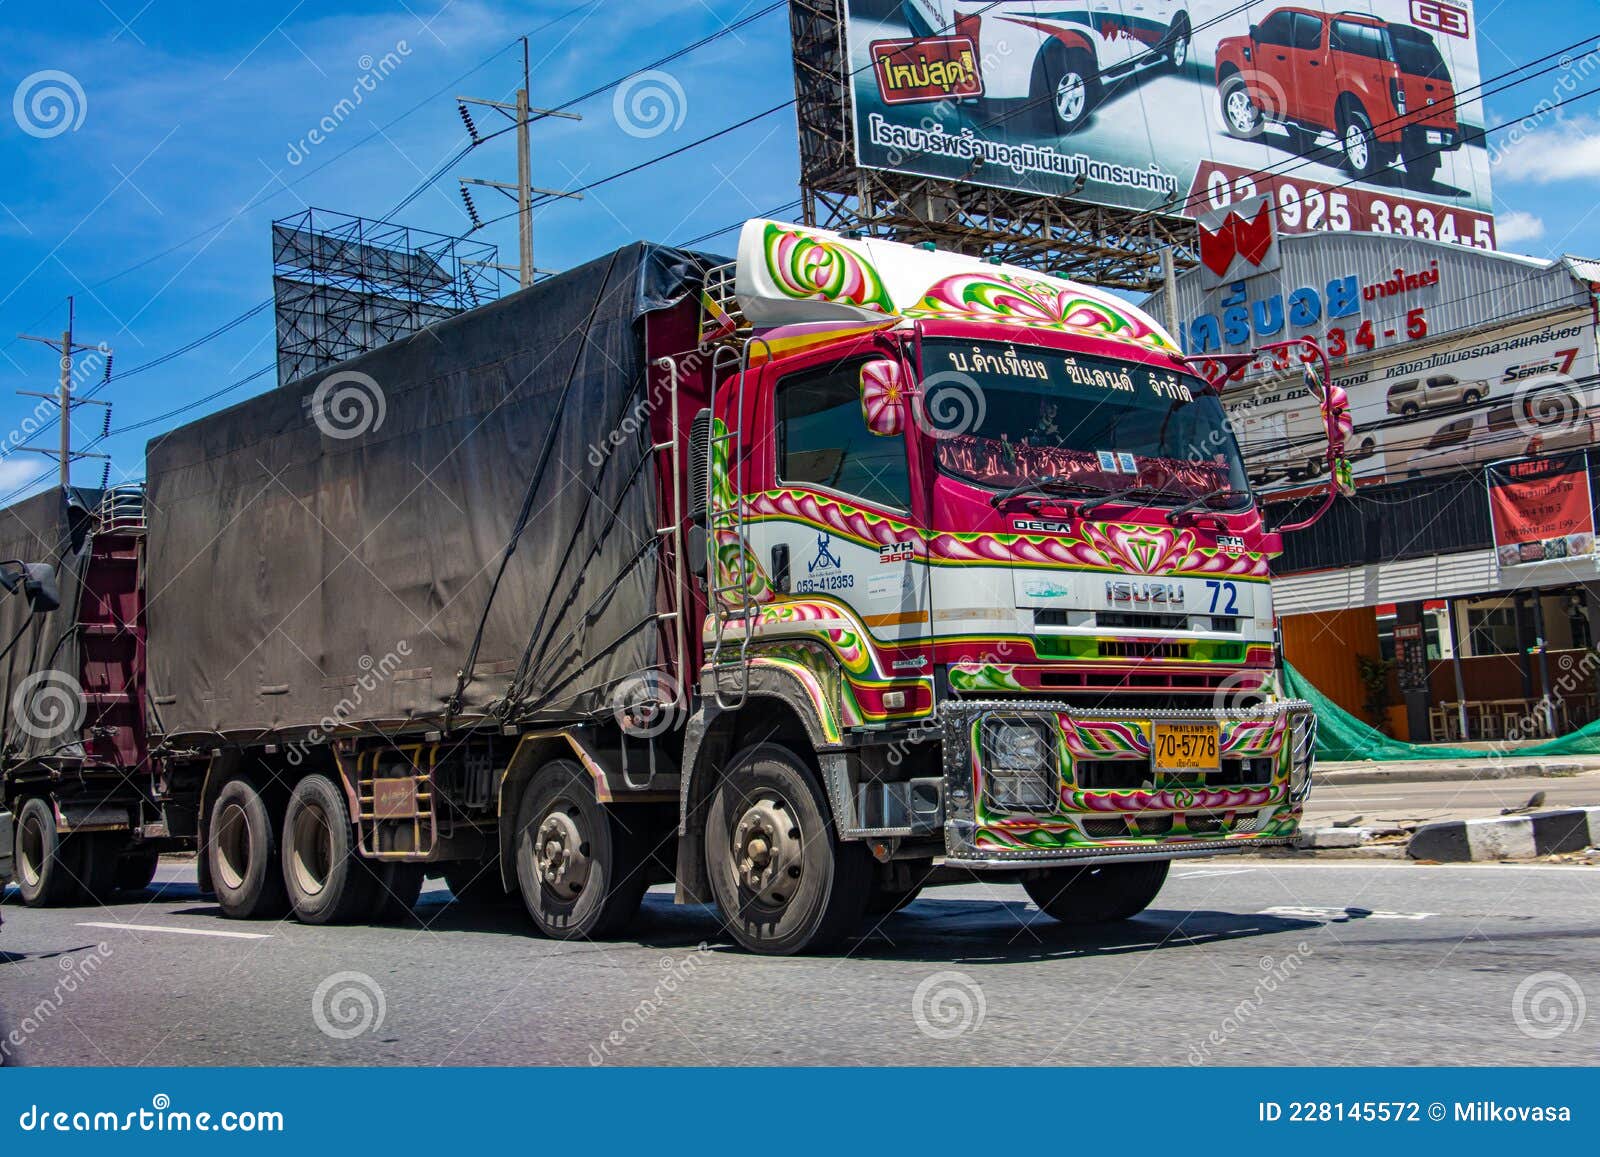 De Vrachtwagen Een Schilderij Versierd Redactionele Fotografie - Image vracht, cabine: 228145572